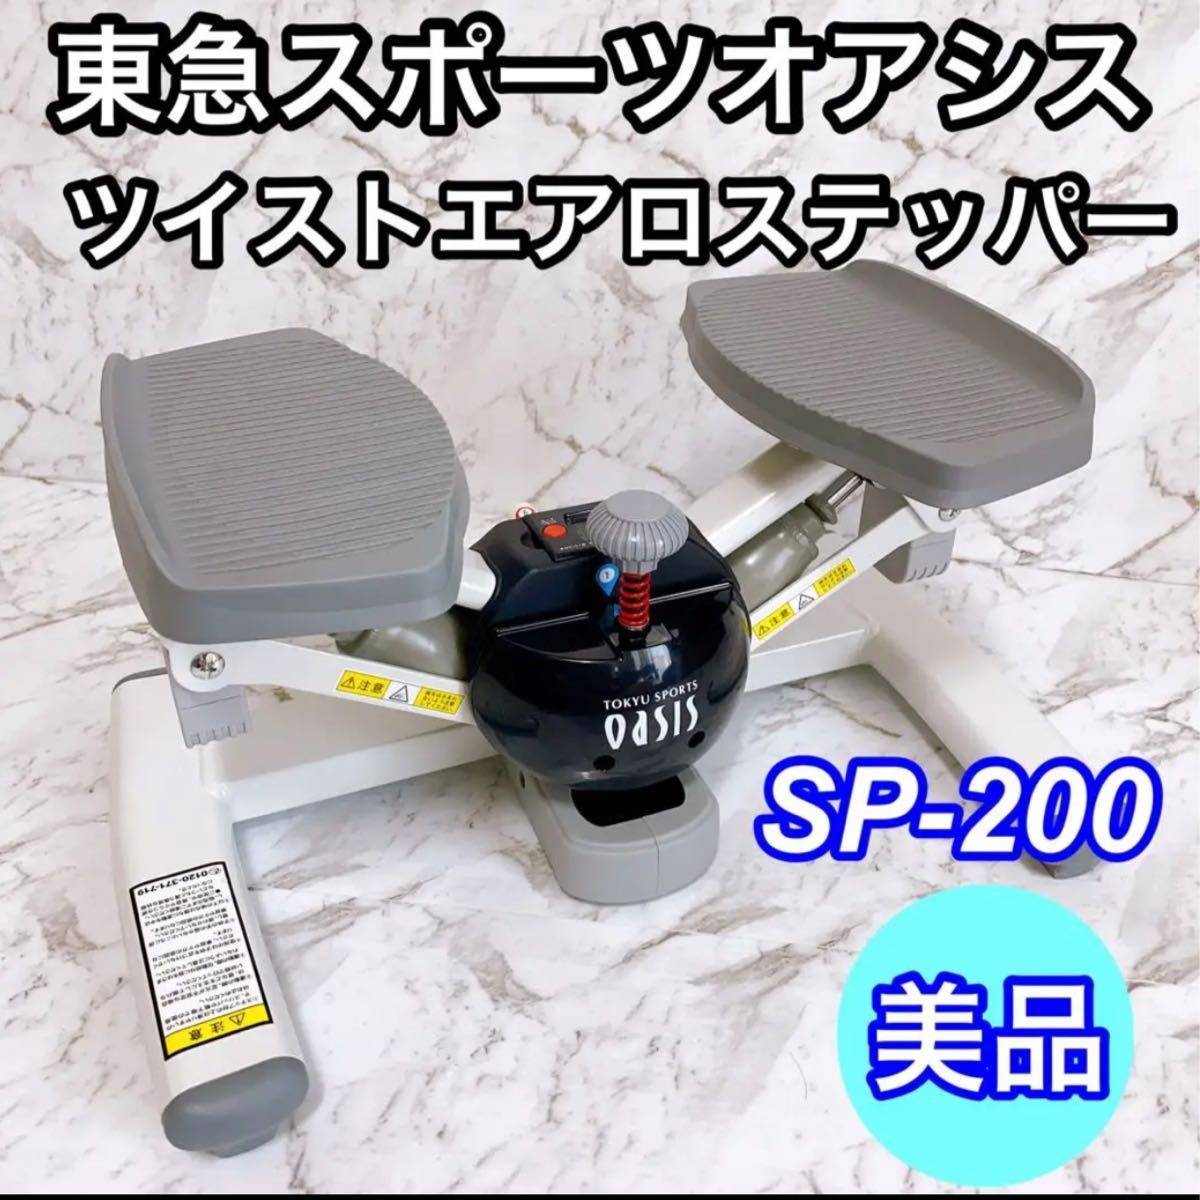 東急スポーツオアシス ツイスト エアロ ステッパー モード切替機能 (ツイスト/エアロ) SP-200